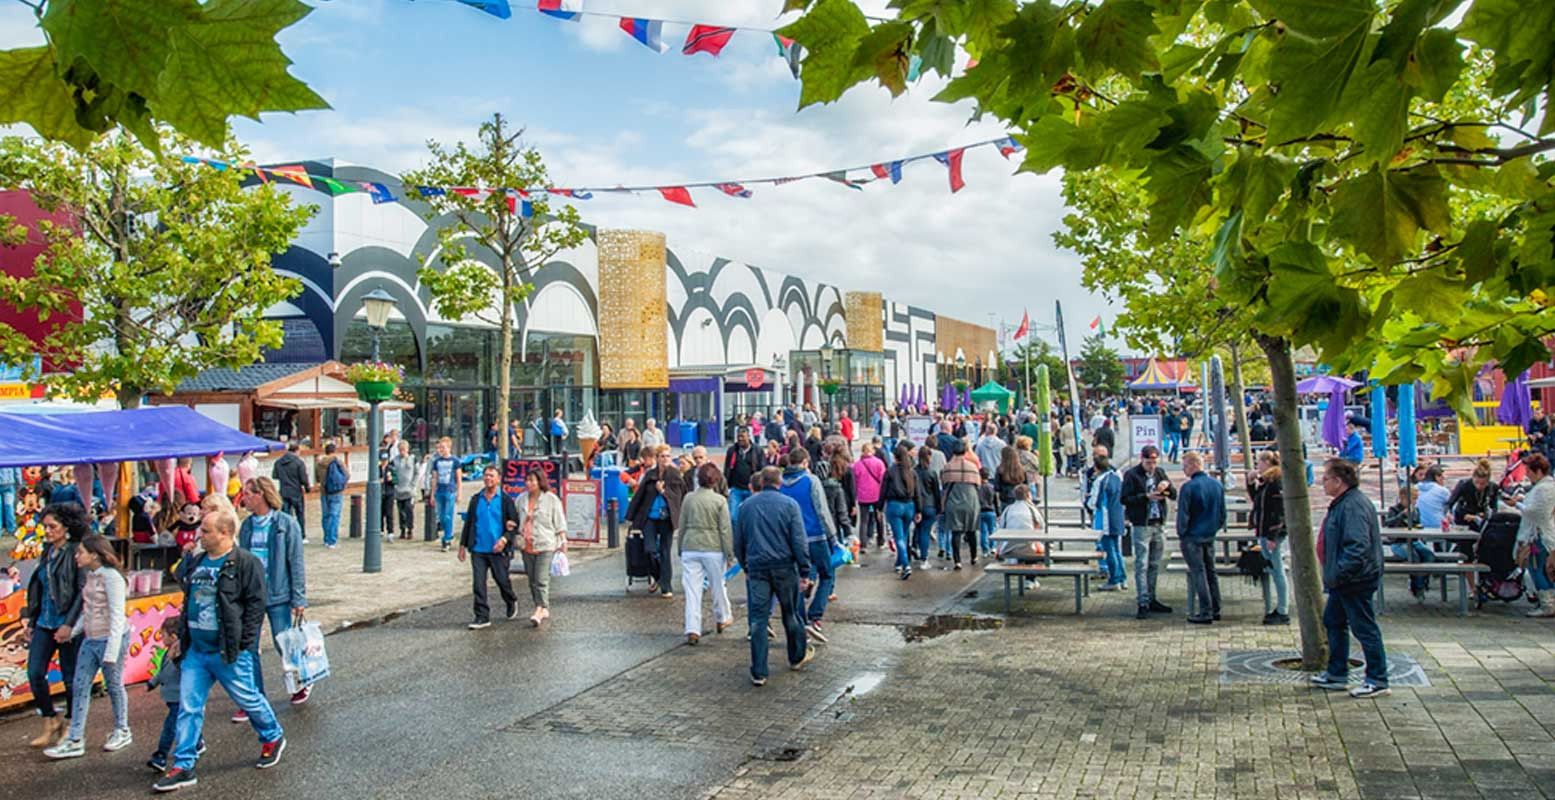 Maak een wereldreis in een dag op de Bazaar in Beverwijk. Foto: De Bazaar